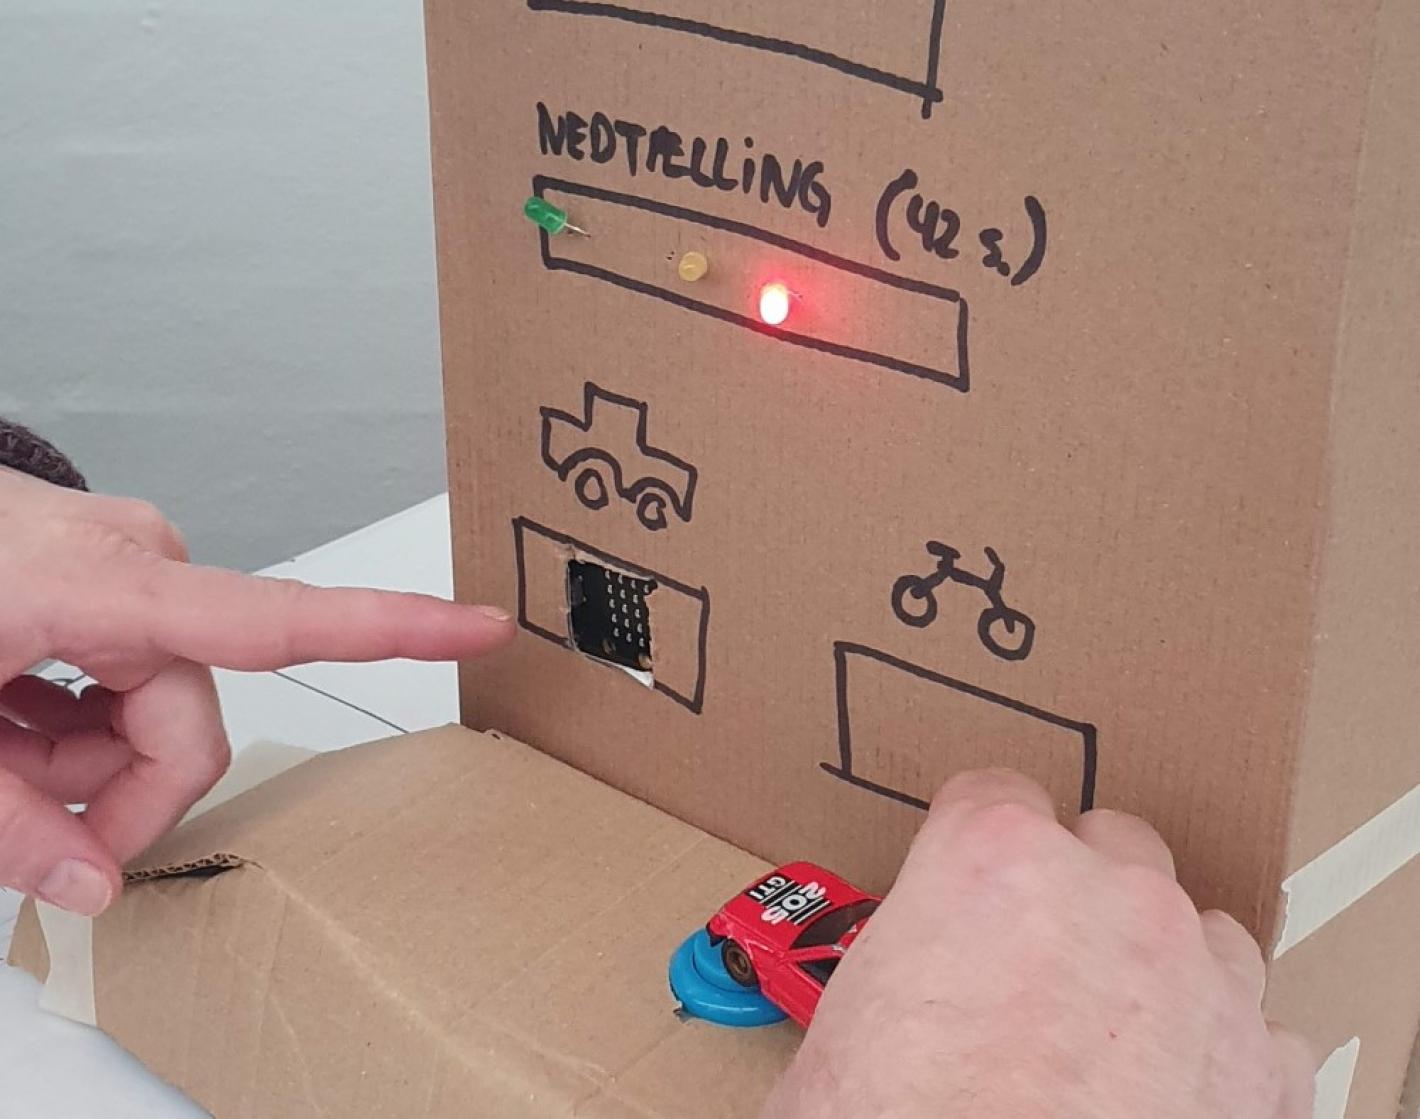 Afprøvning af elektronisk kredsløb med legetøjsbil og papkasse som måleaparat